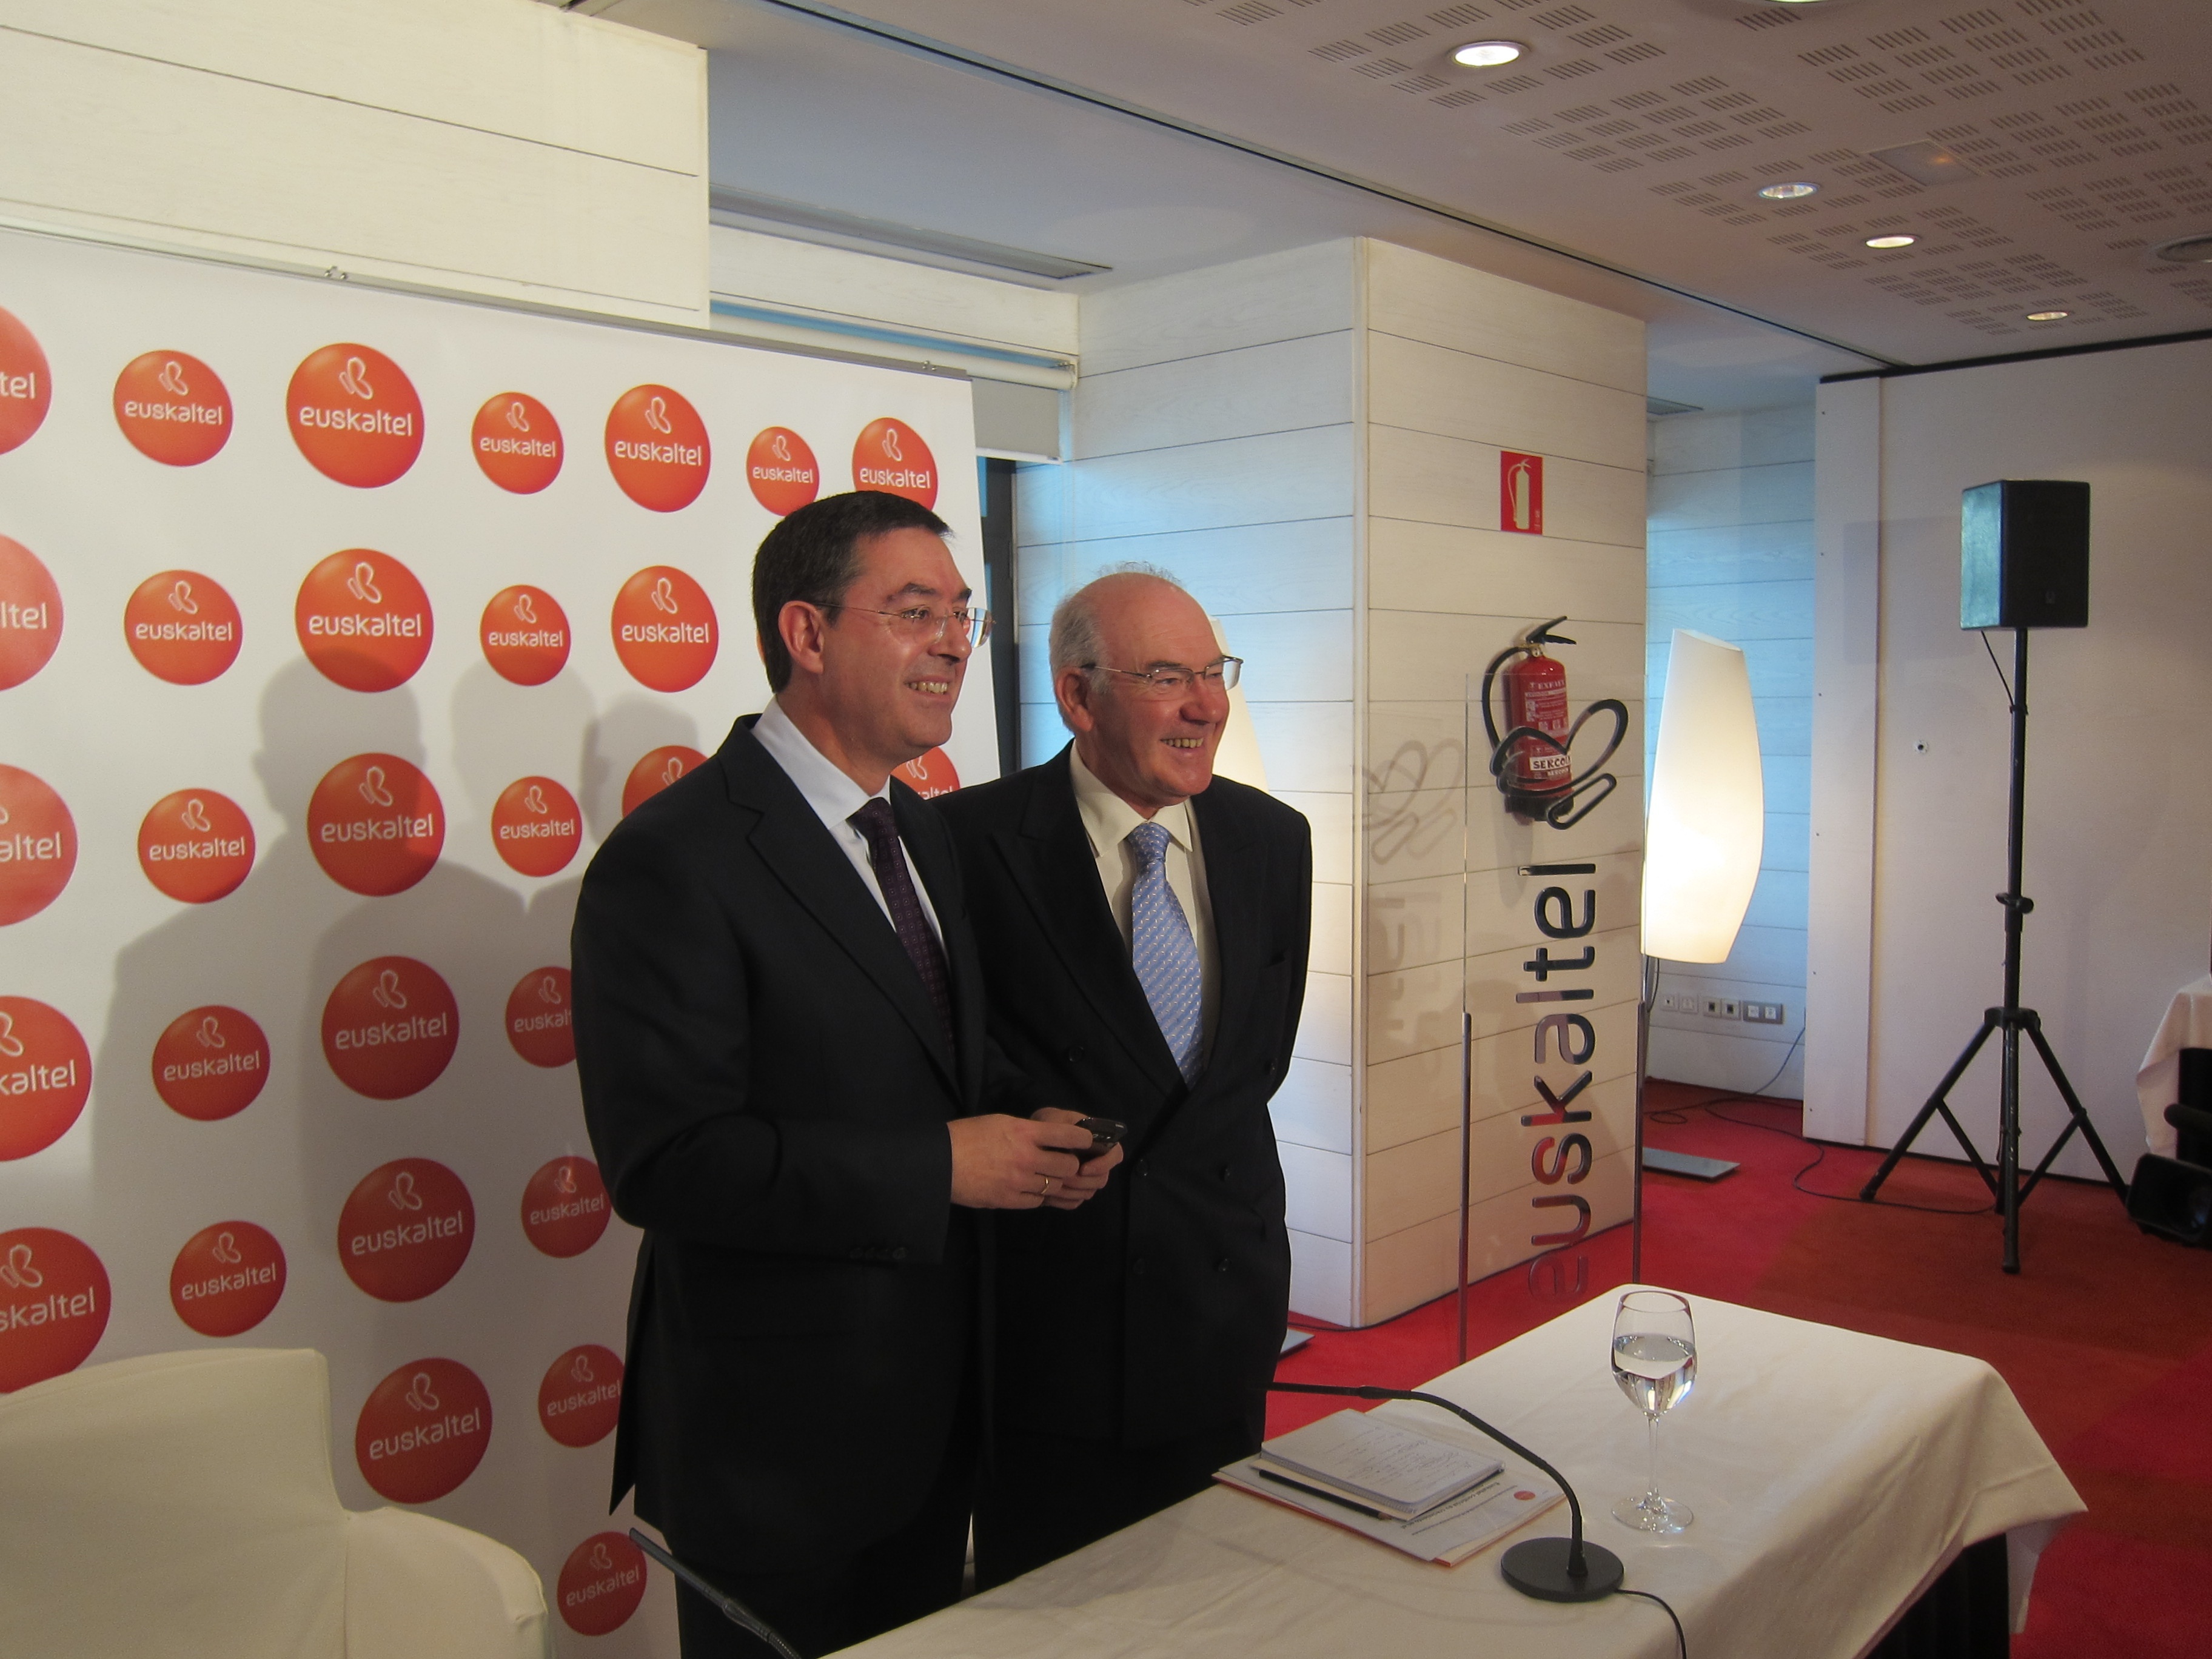 Euskaltel cerrará 2011 con un beneficio de 38,4 millones, un 17,4% más